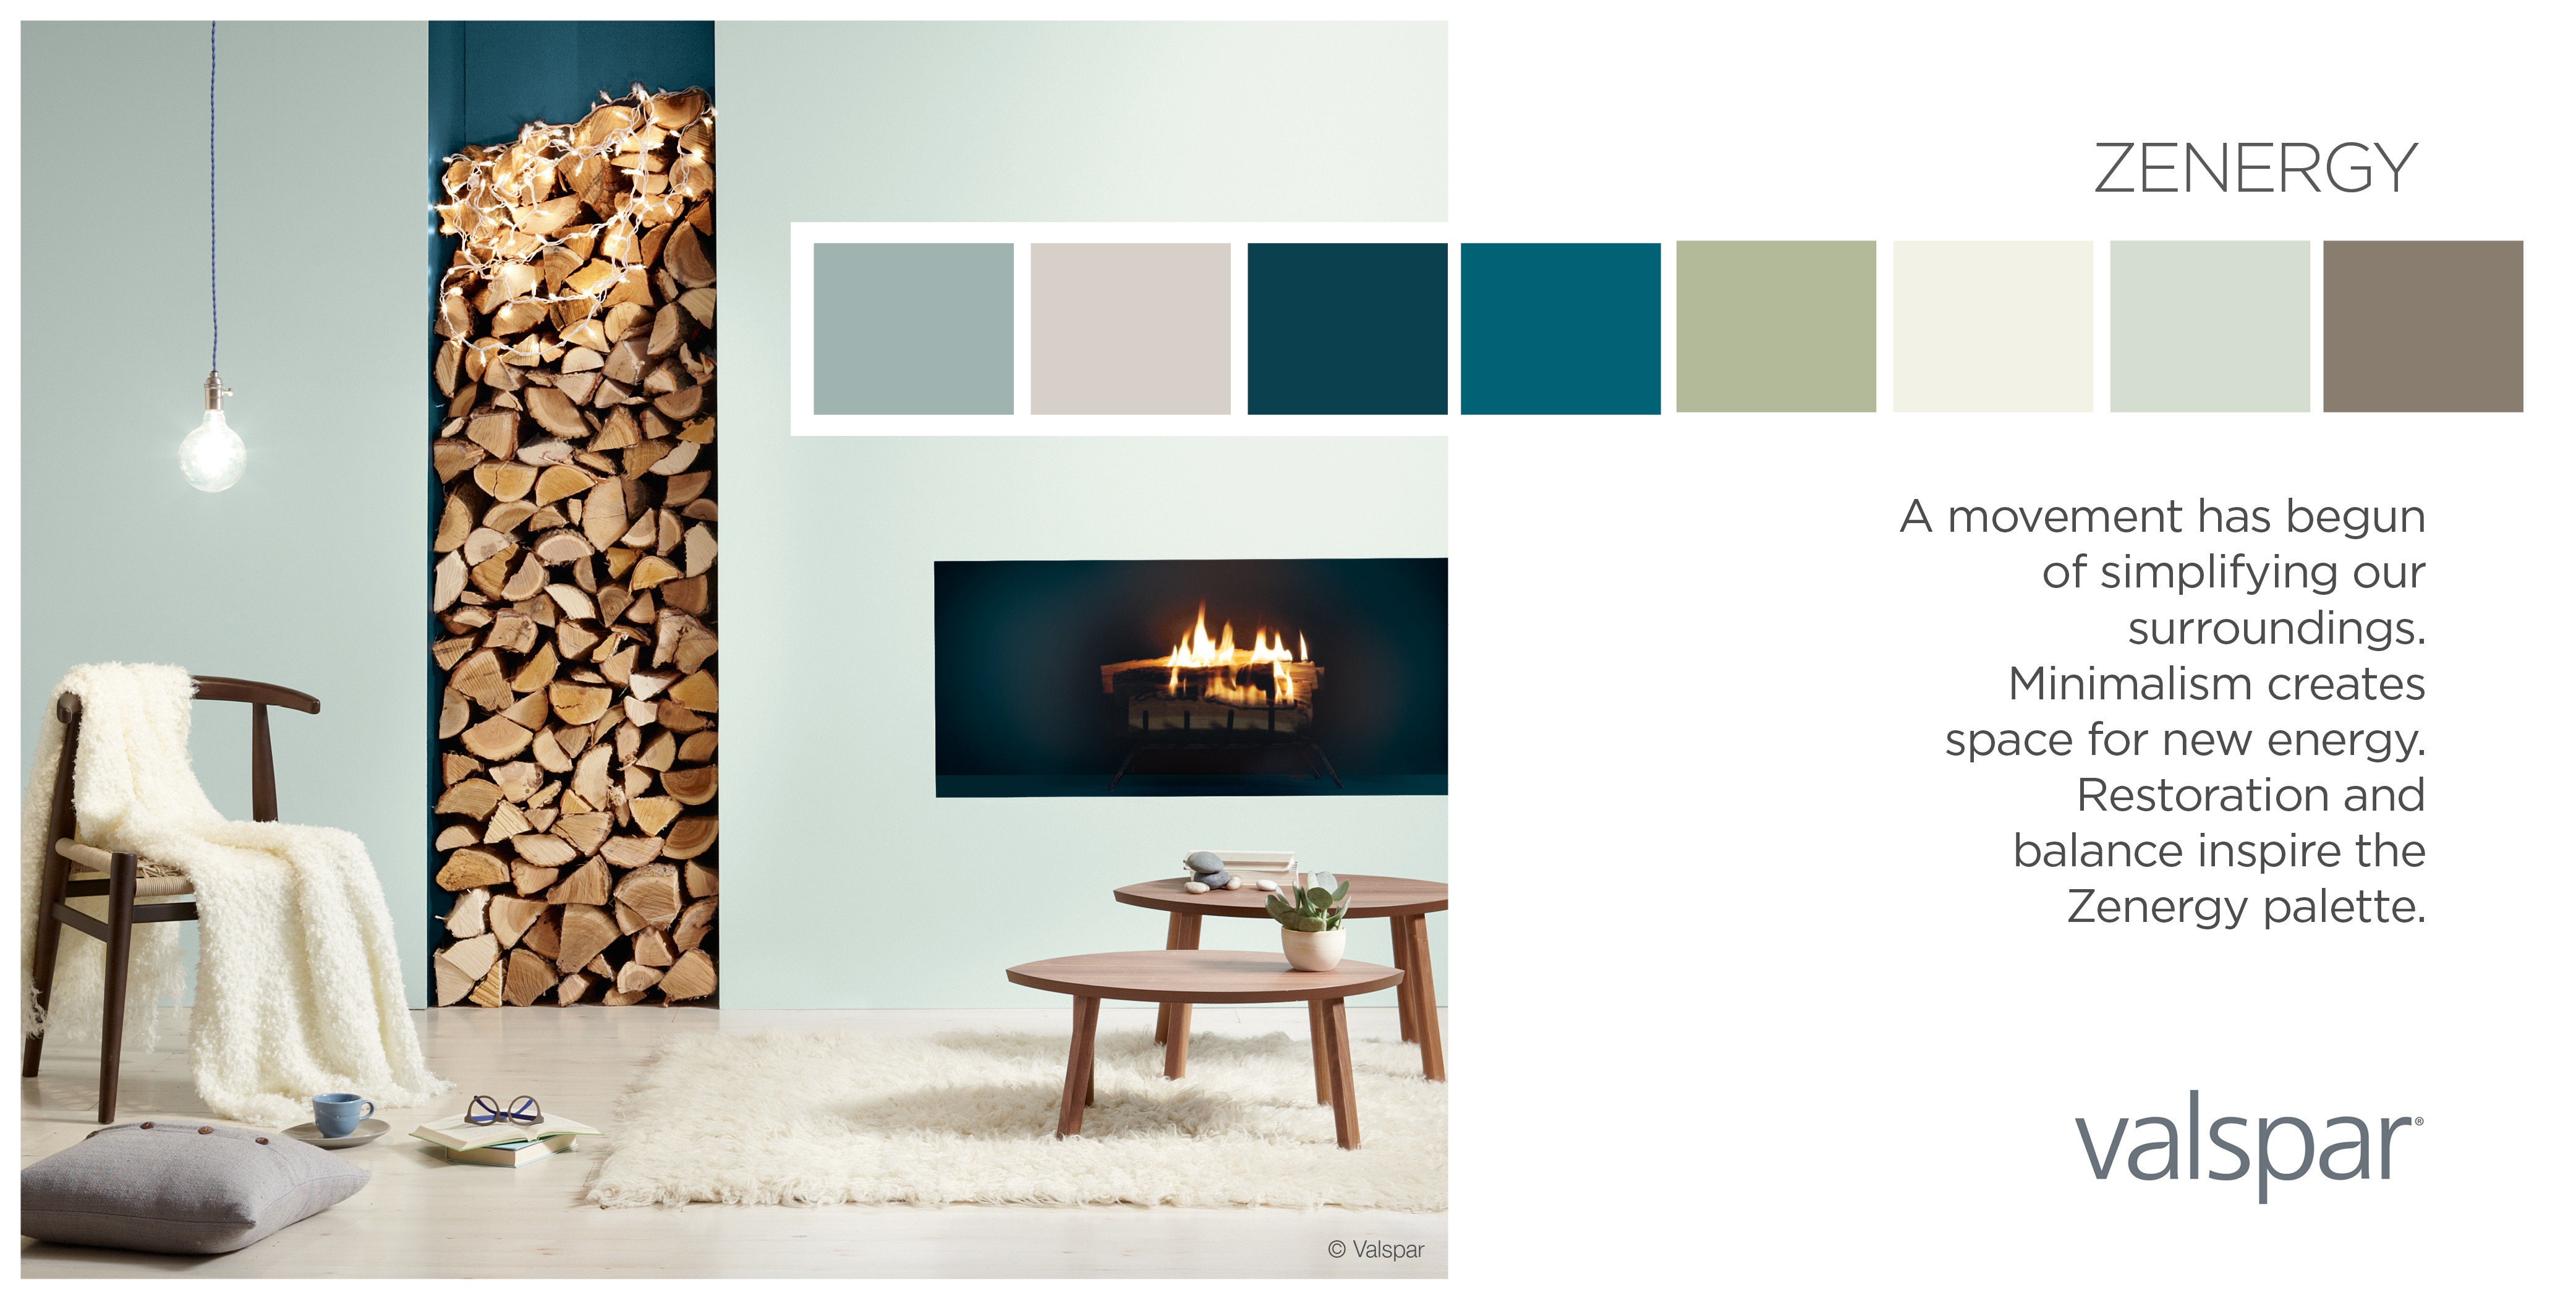 Best ideas about Valspar Paint Colors
. Save or Pin Valspar Paint Unveils 2014 Color Outlook Now.